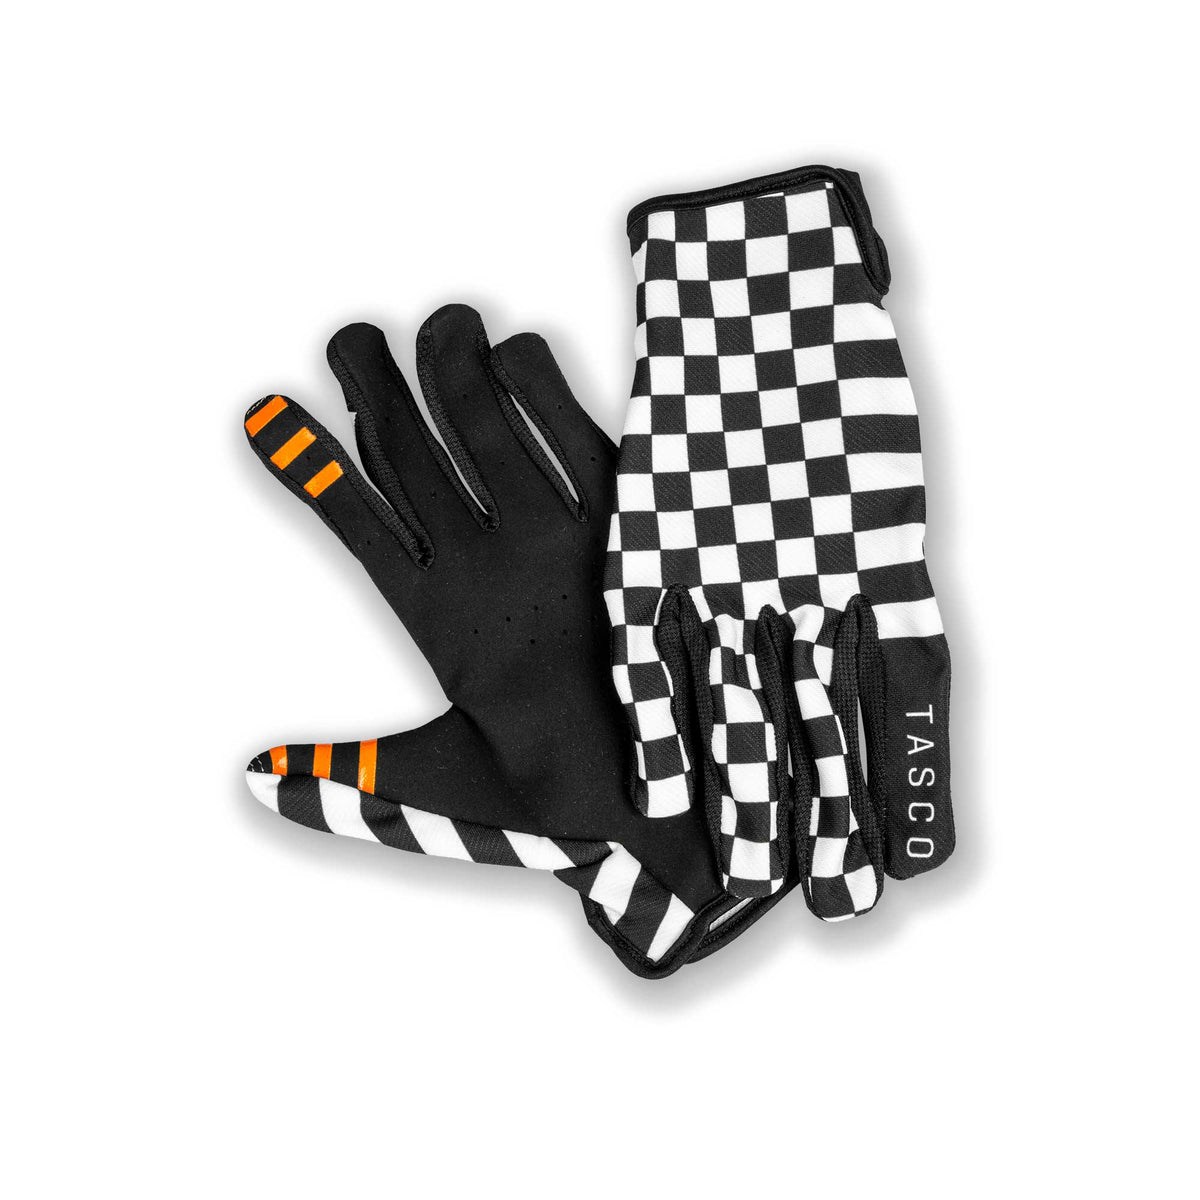 Checkmate Glove & Sock Kit